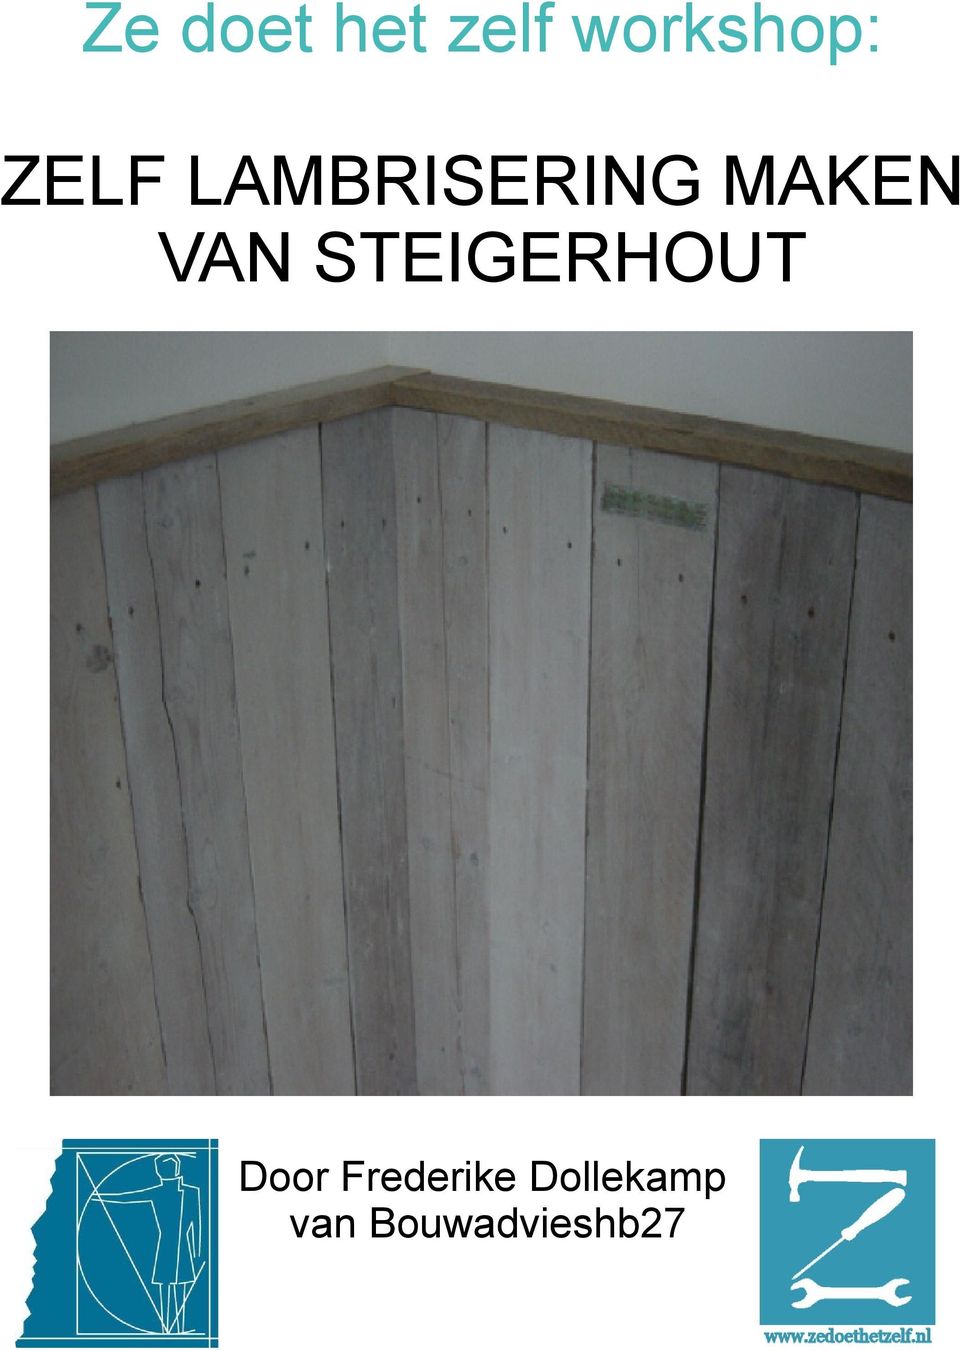 Ze Doet Het Zelf Workshop Zelf Lambrisering Maken Van Steigerhout Door Frederike Dollekamp Van Bouwadvieshb27 Pdf Free Download